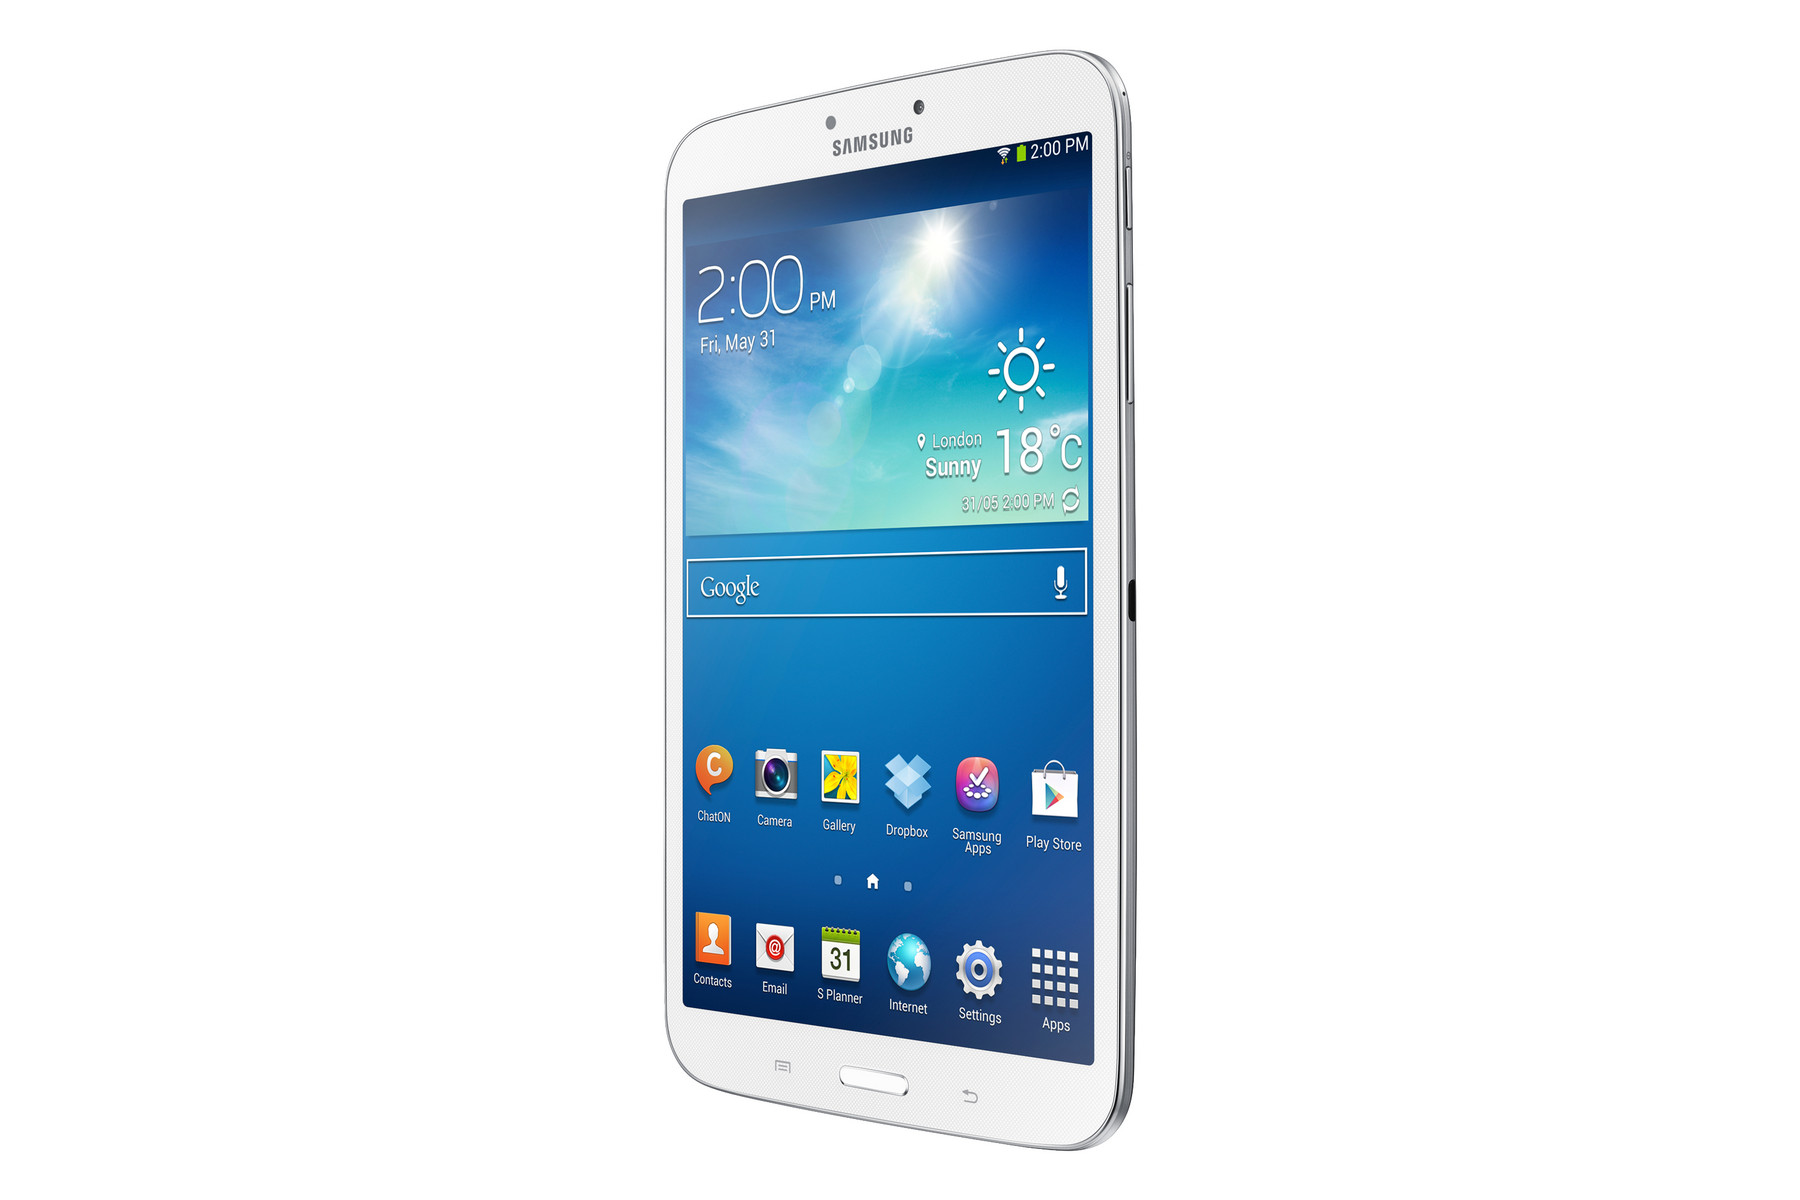 Samsung Galaxy Tab 3 8.0 Soft Reset